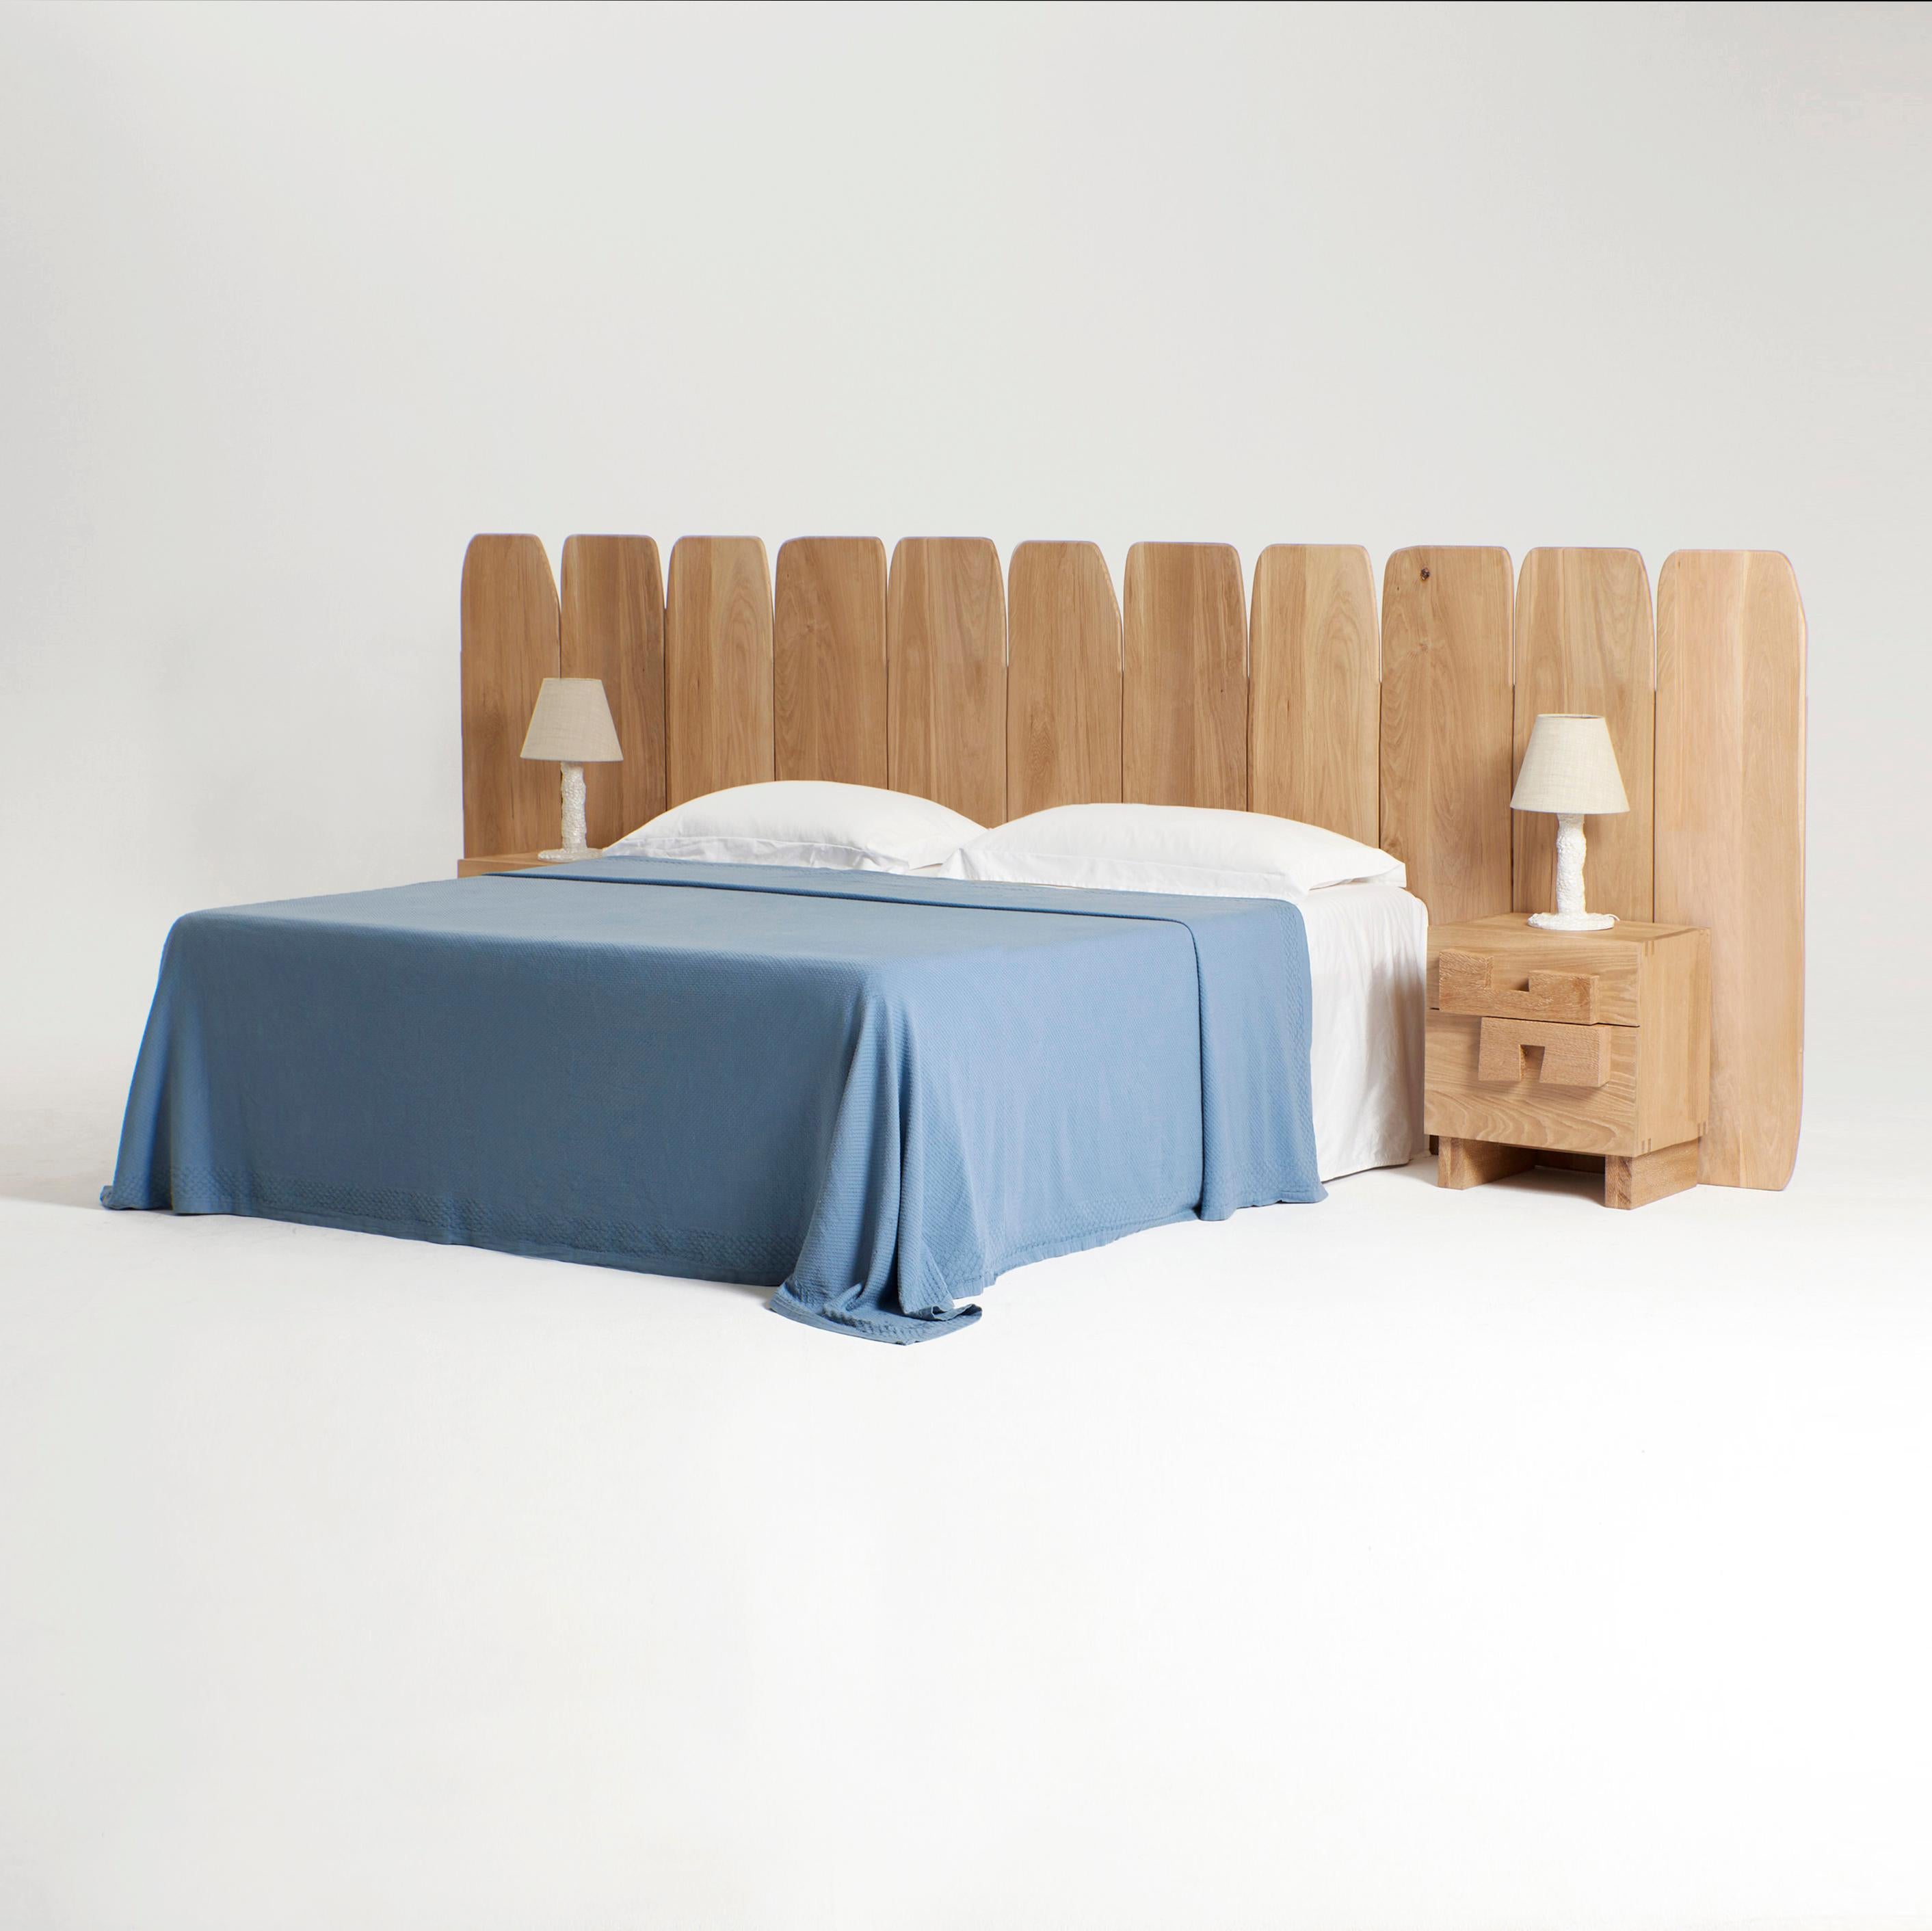 Tête de lit Madeira Large
Conçu par le project 213A en 2023

Les panneaux de bois de chêne les plus fins sont alignés et fixés au mur pour s'adapter à l'arrière d'un lit kingsize.

Dimensions sur mesure sur demande, également disponible en chêne et